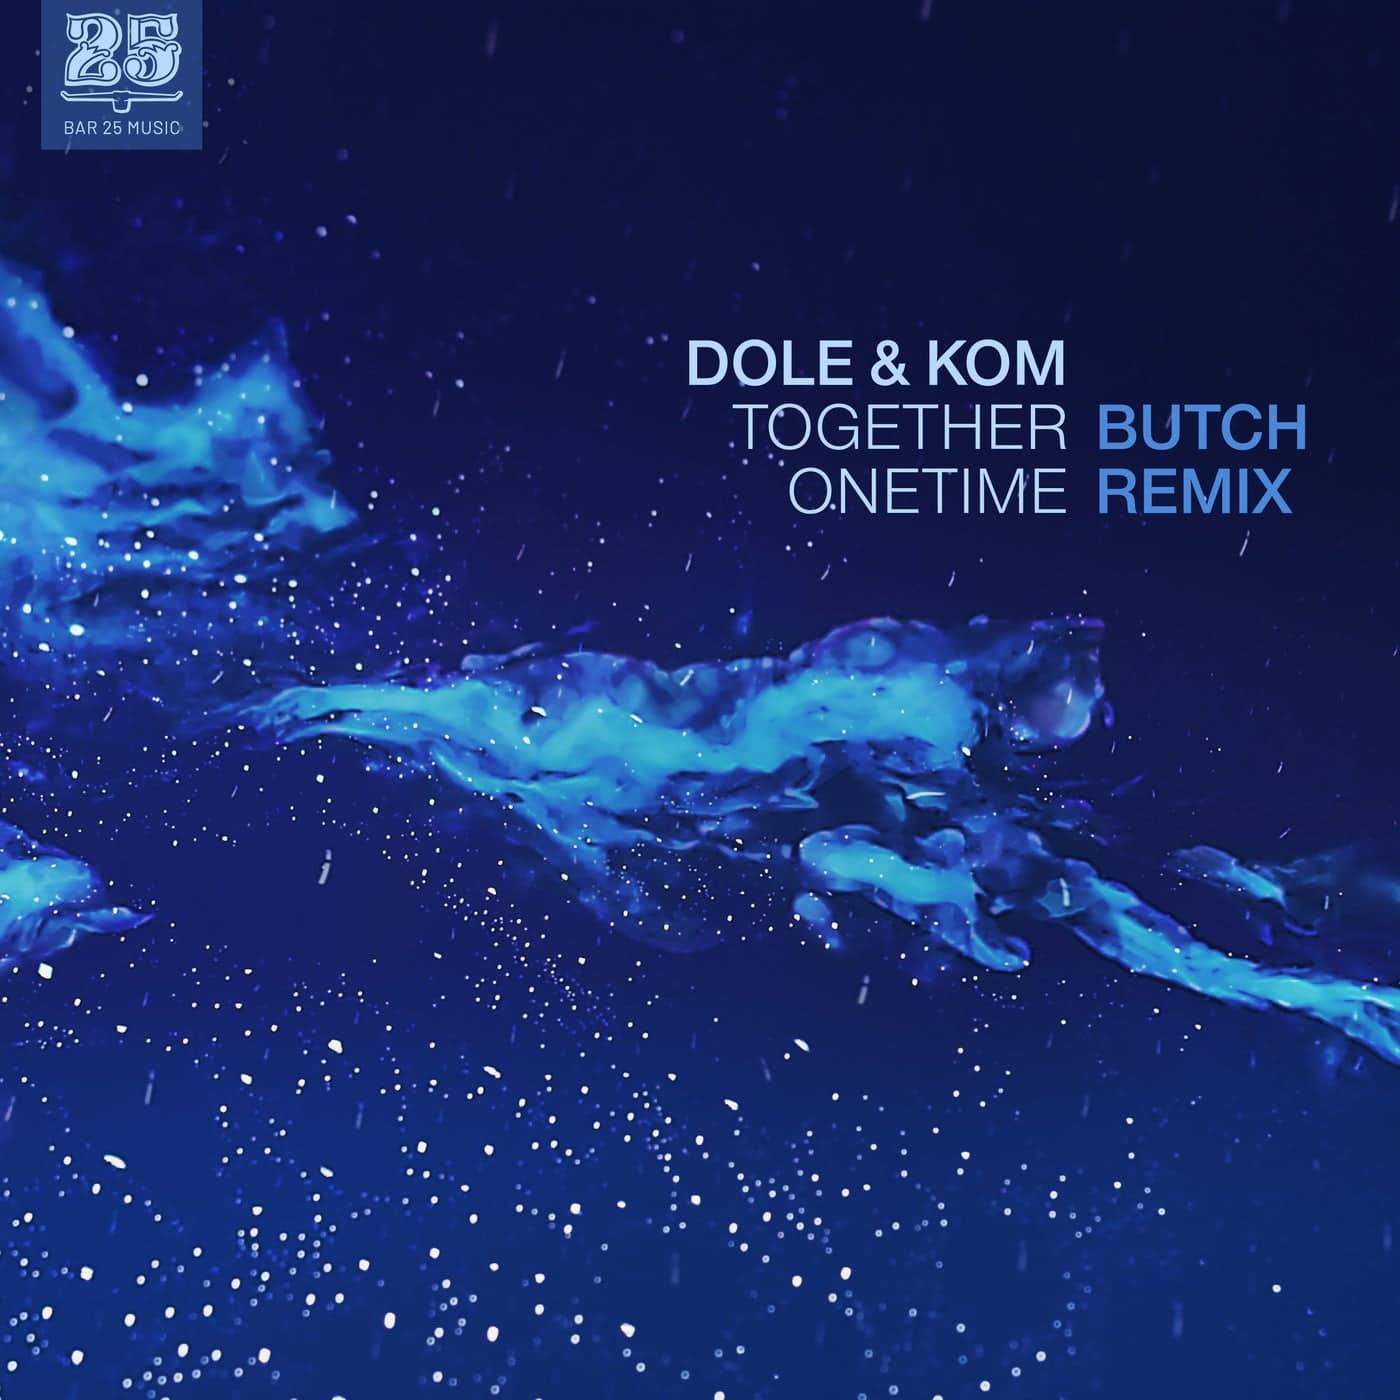 image cover: Dole & Kom - Together Onetime (Butch Remix) / BAR25159